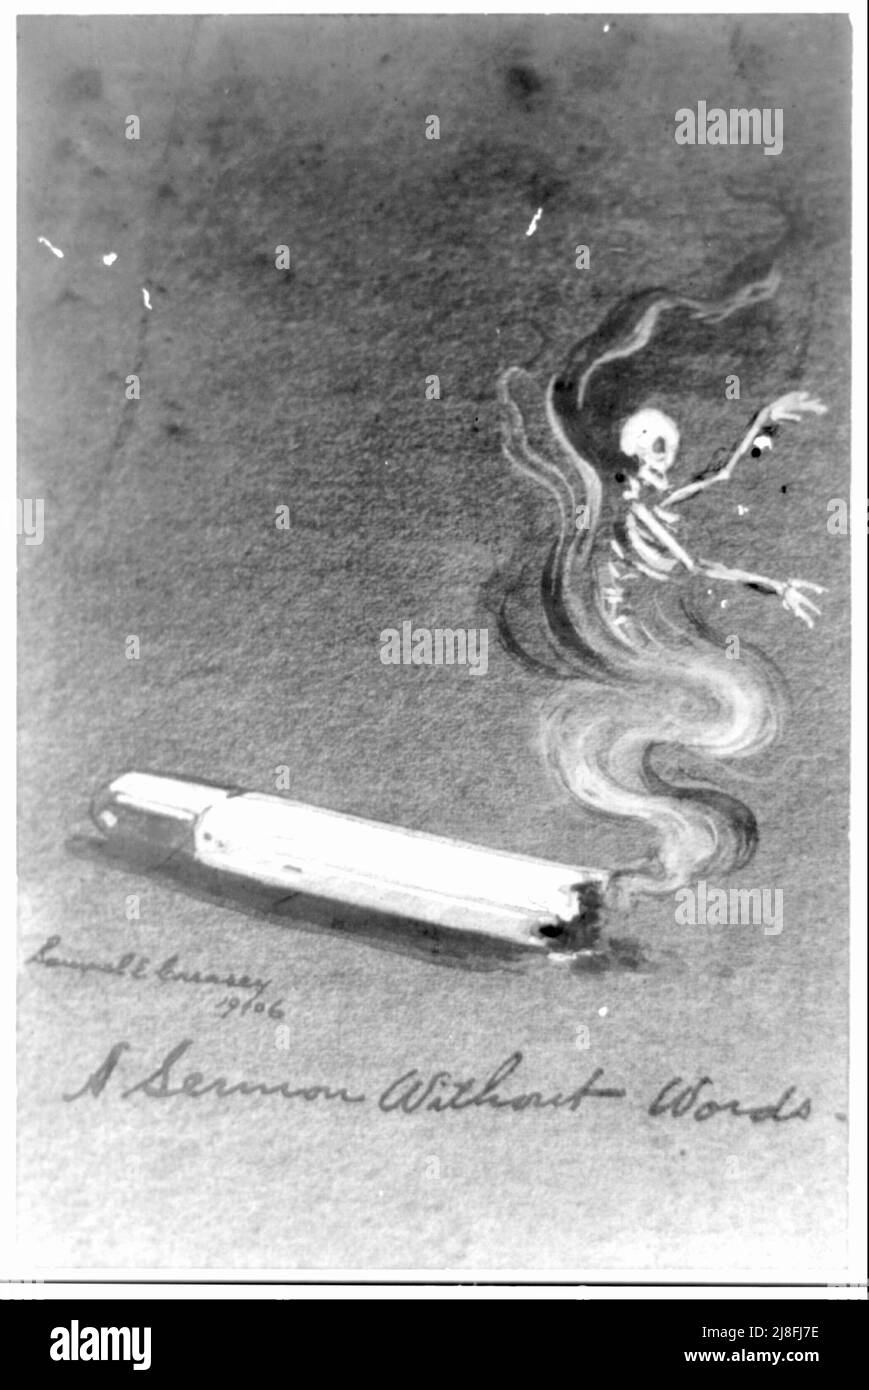 Eine Predigt ohne Worte - Frühwarnposter, auf dem die Gesundheitsrisiken des Rauchens hervorgehoben werden. Ein Skelett ist im Tabakrauch zu sehen - 1906 Stockfoto